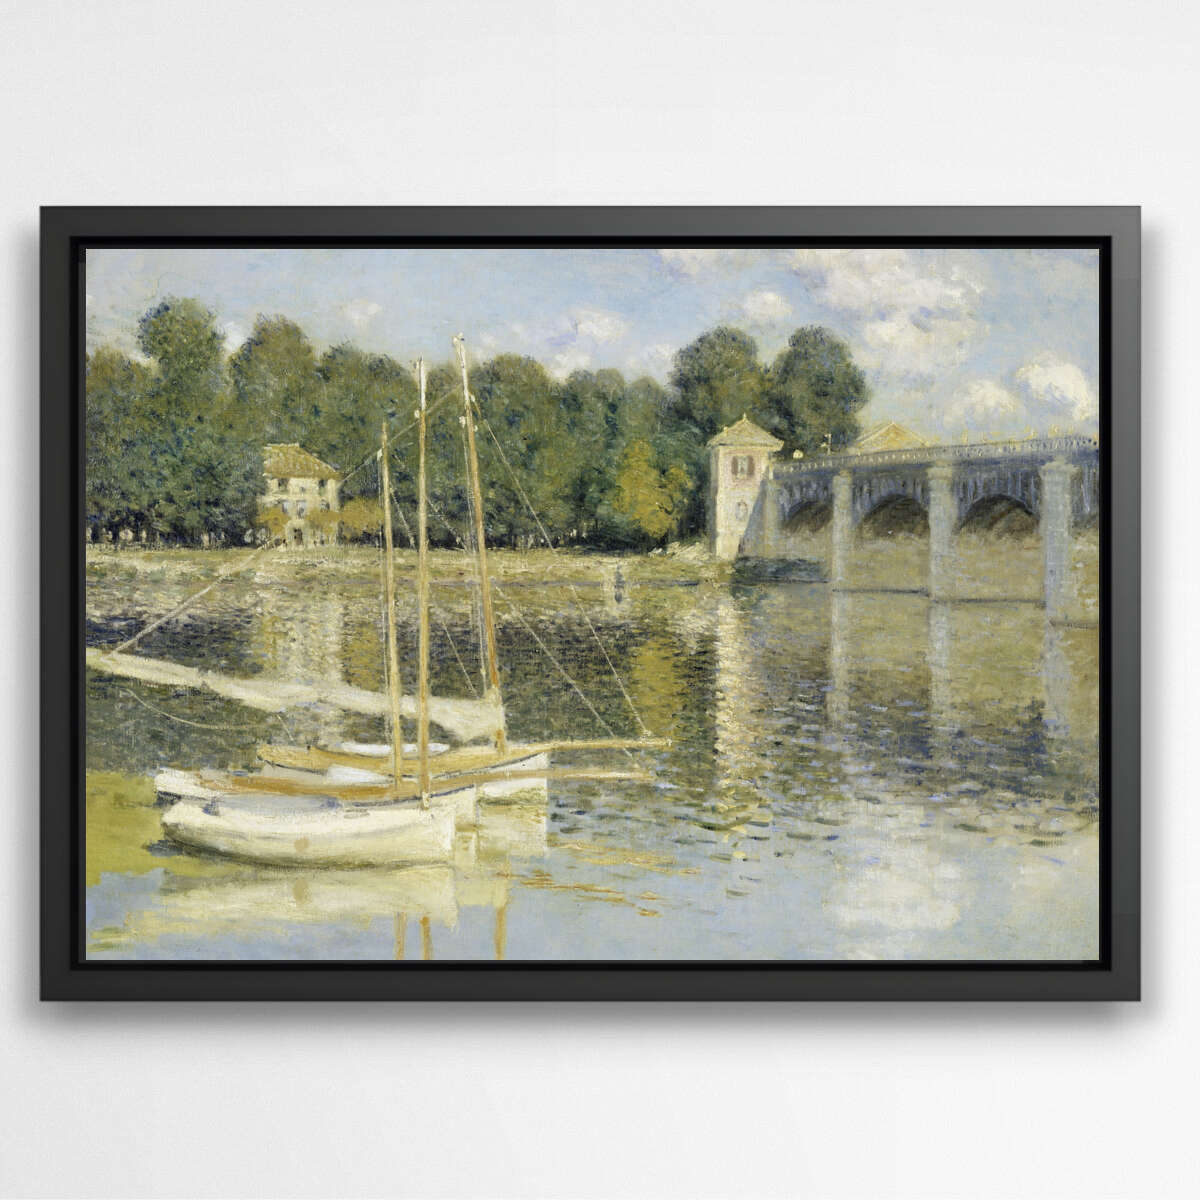 The Argenteuil Bridge by Claude Monet | Claude Monet Wall Art Prints - The Canvas Hive